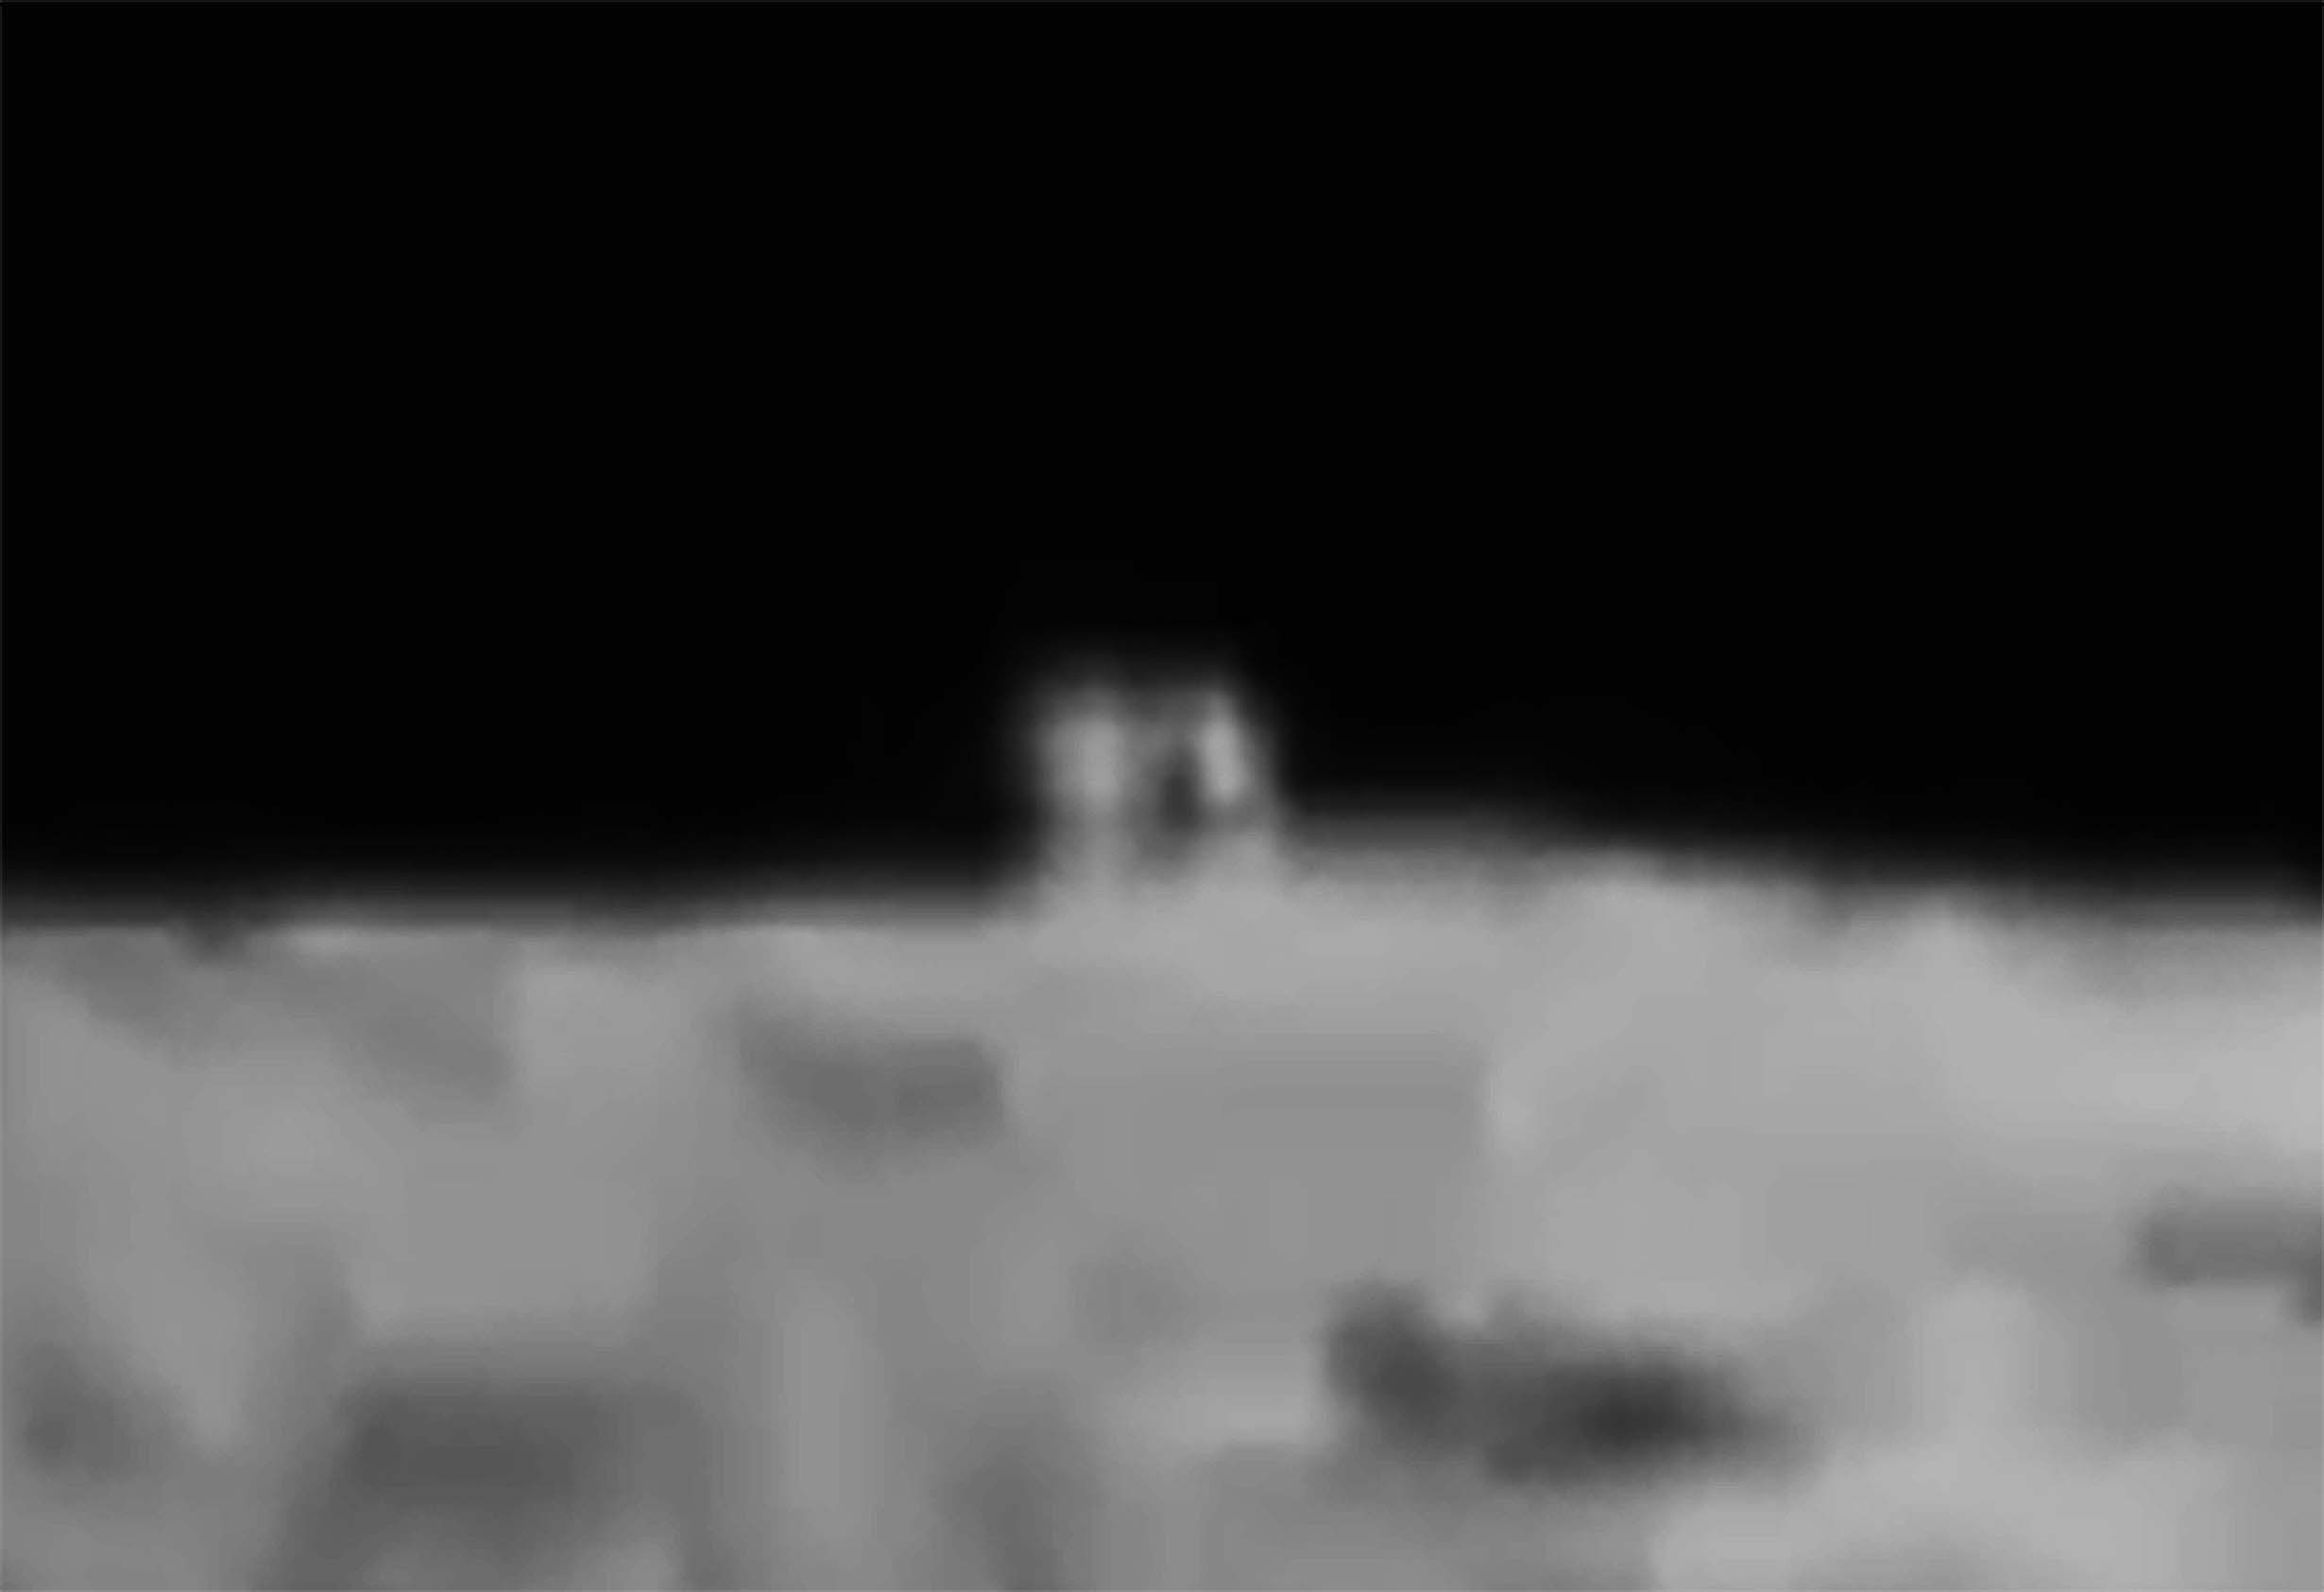 【宇宙ニュース】月面探査機が月で人工物を発見か / 正方形の物体に「ミステリーハウス」と命名